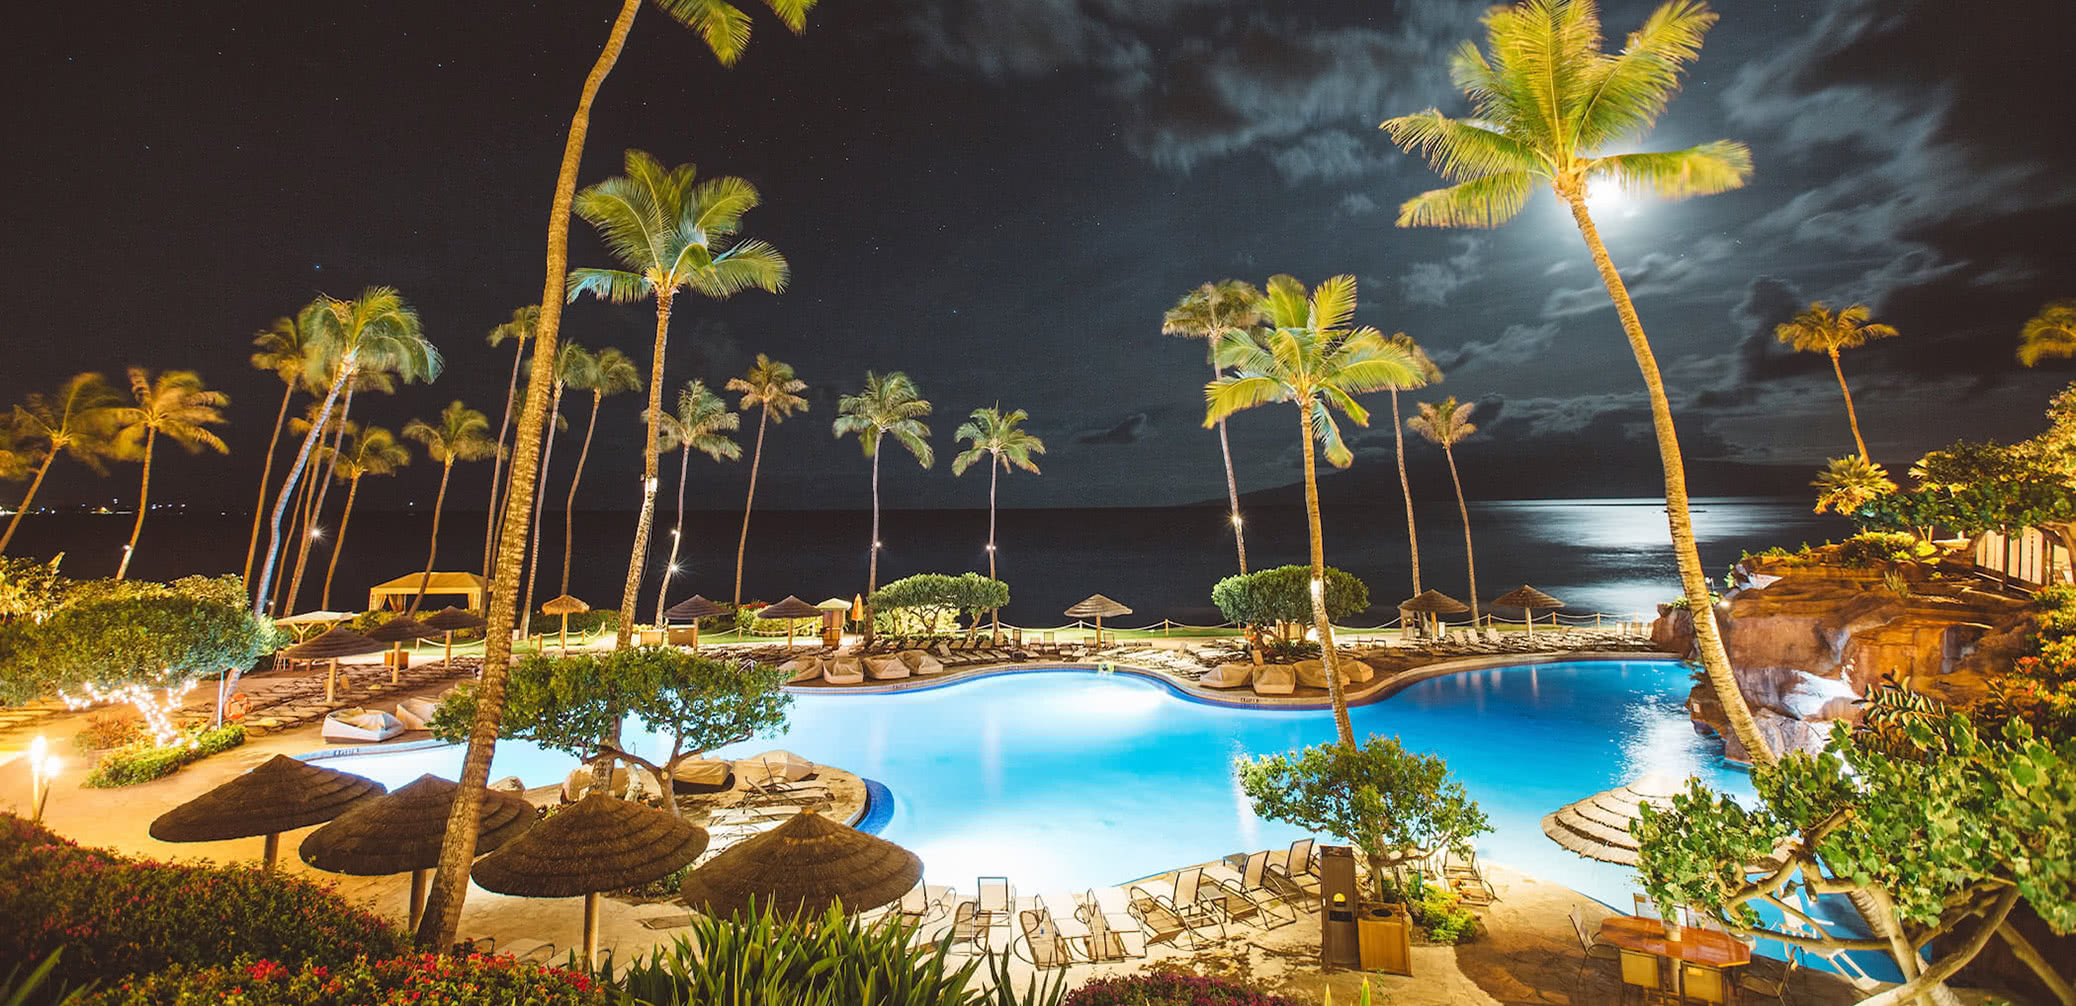 Review: Hyatt Regency Maui Resort and Spa